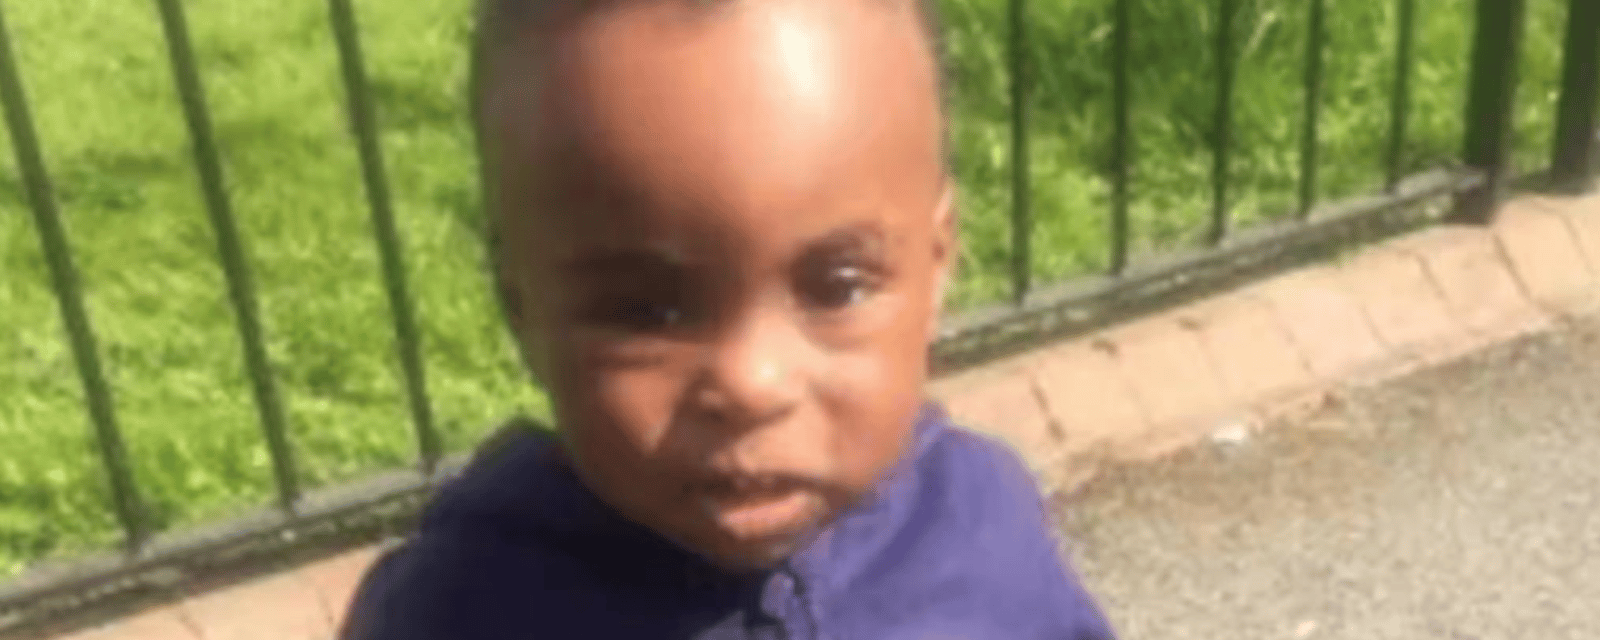 Un garçon de 2 ans perd la vie en raison des moisissures dans son logement 